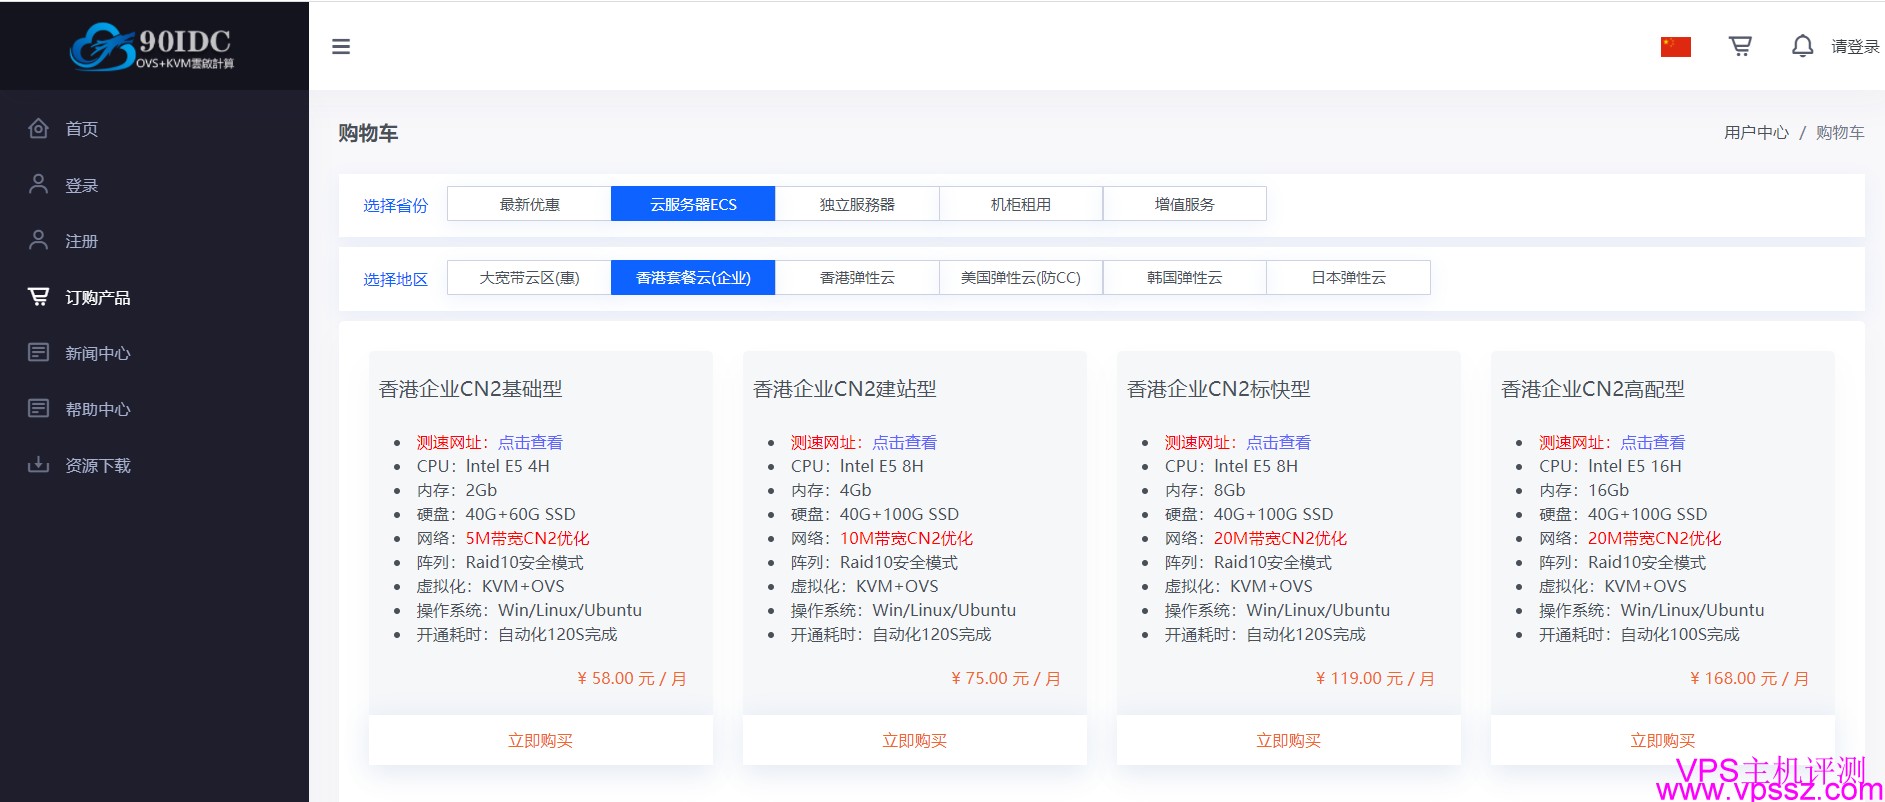 90IDC:香港促销CN2双向8H4G10M只需75元(本站85折优惠、套餐不限流)  vps优惠 第2张